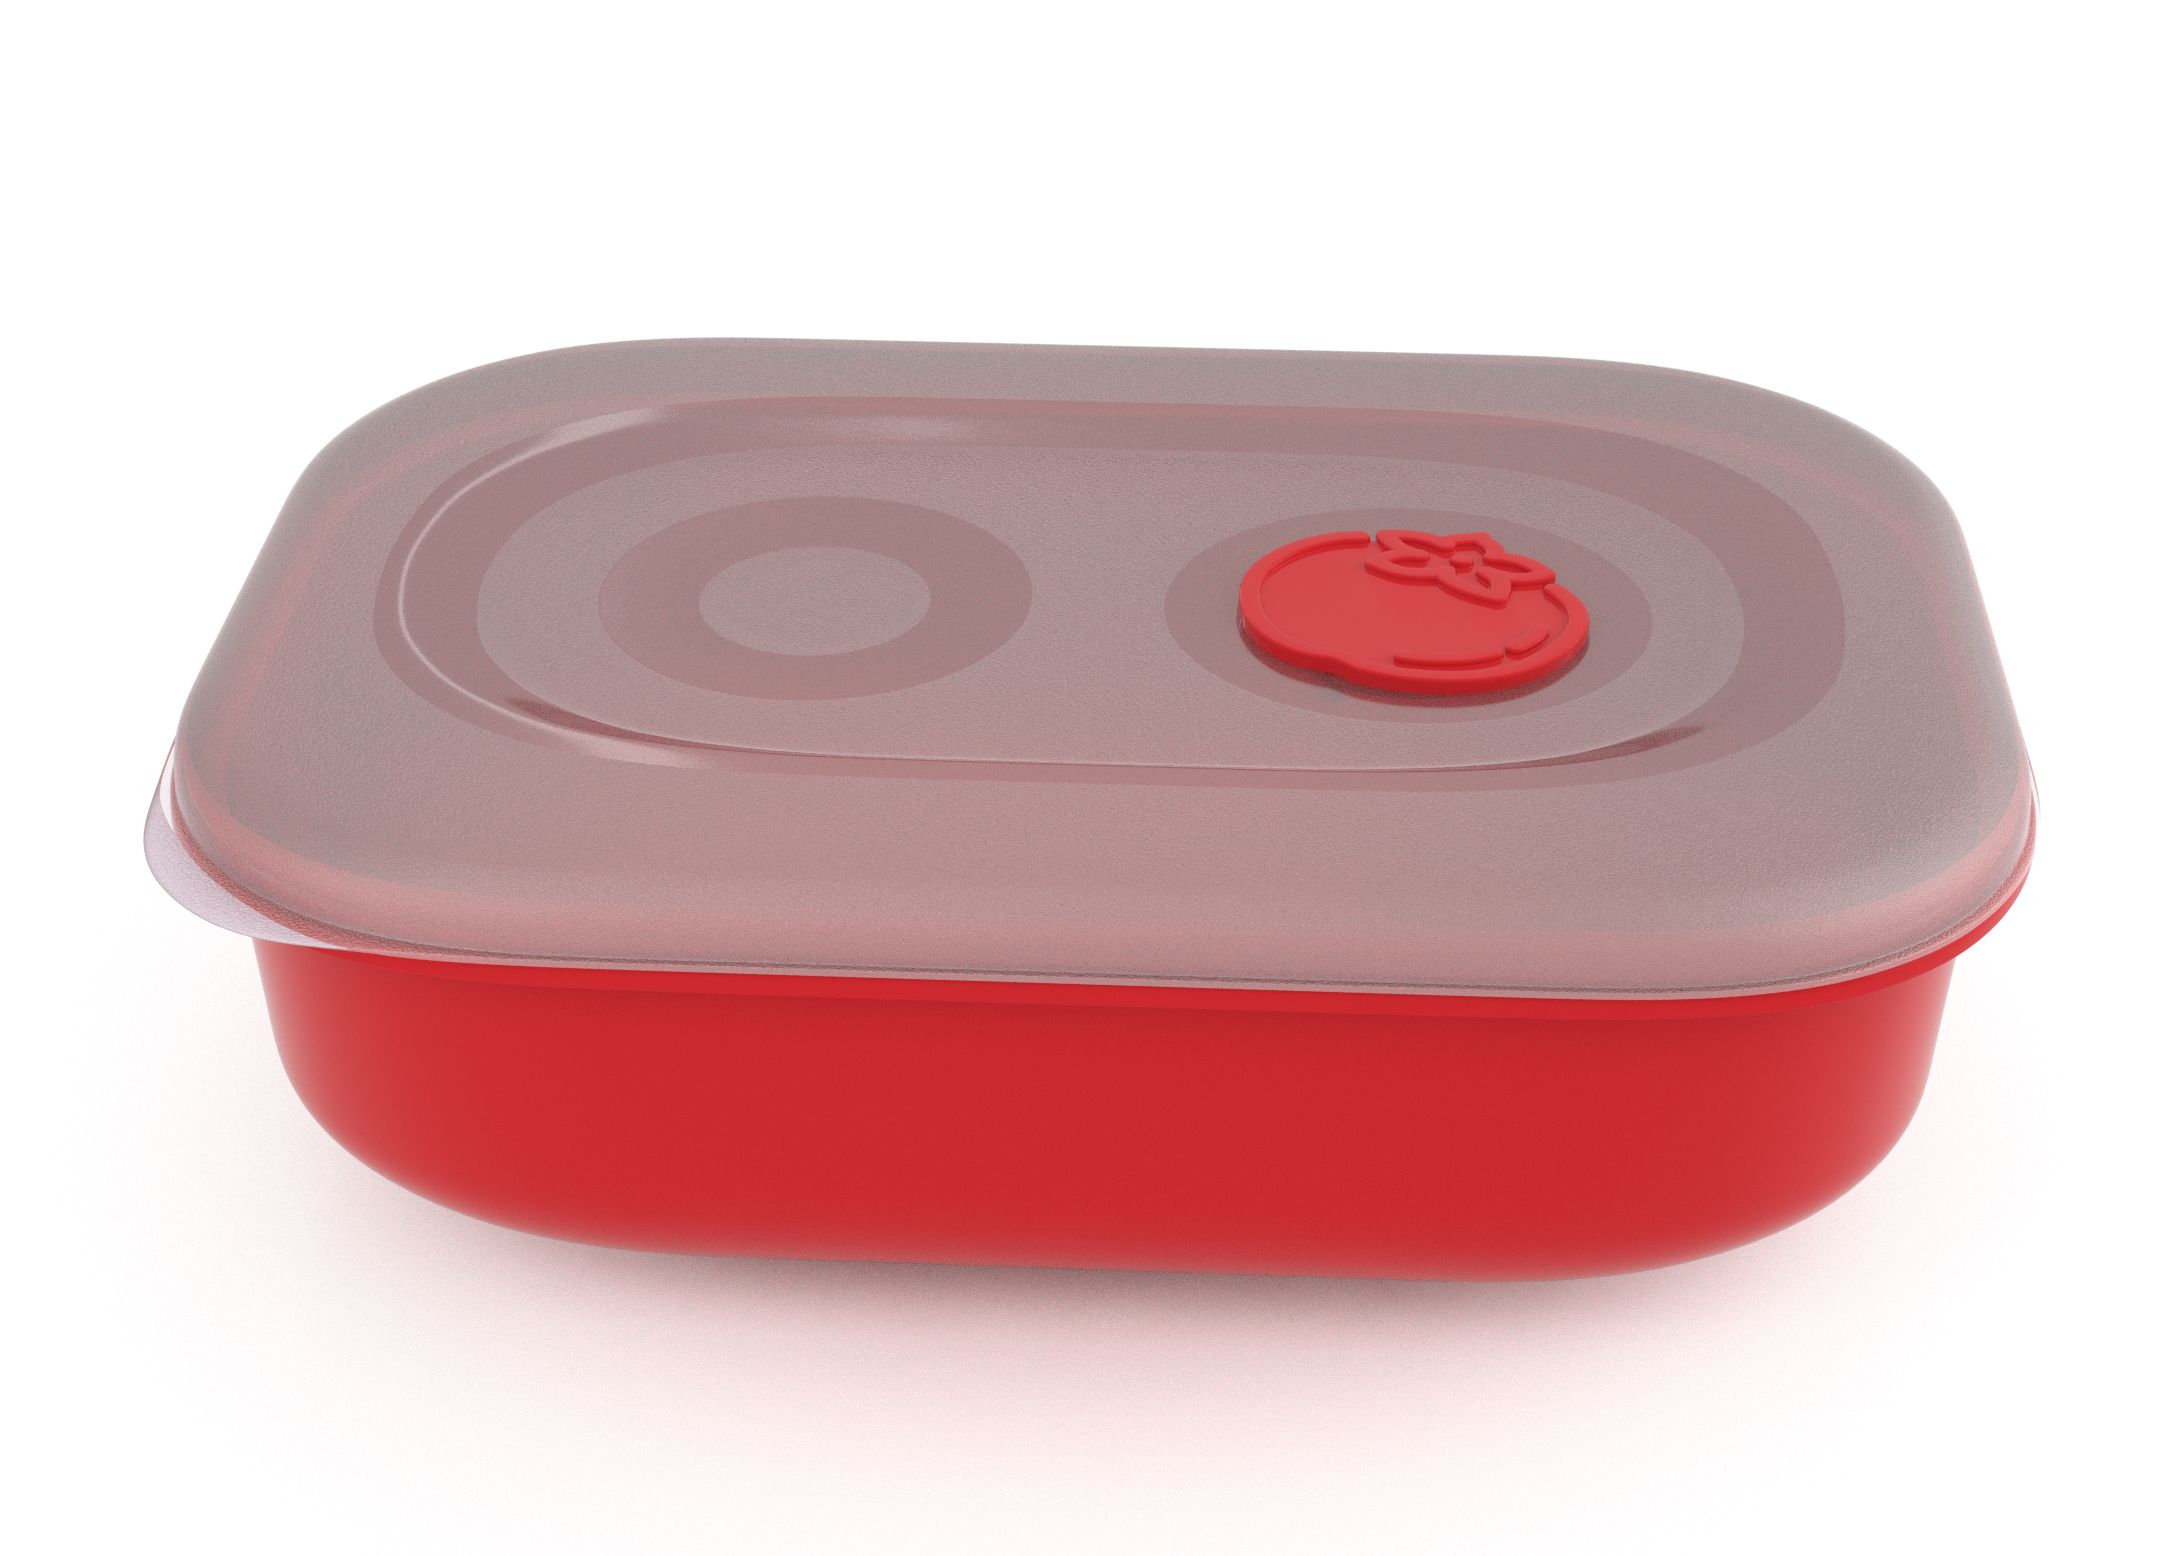 קופסת תמה לוק מלבנית 3 ליטר 9302 עם שסתום עגבניה אדום בהיר